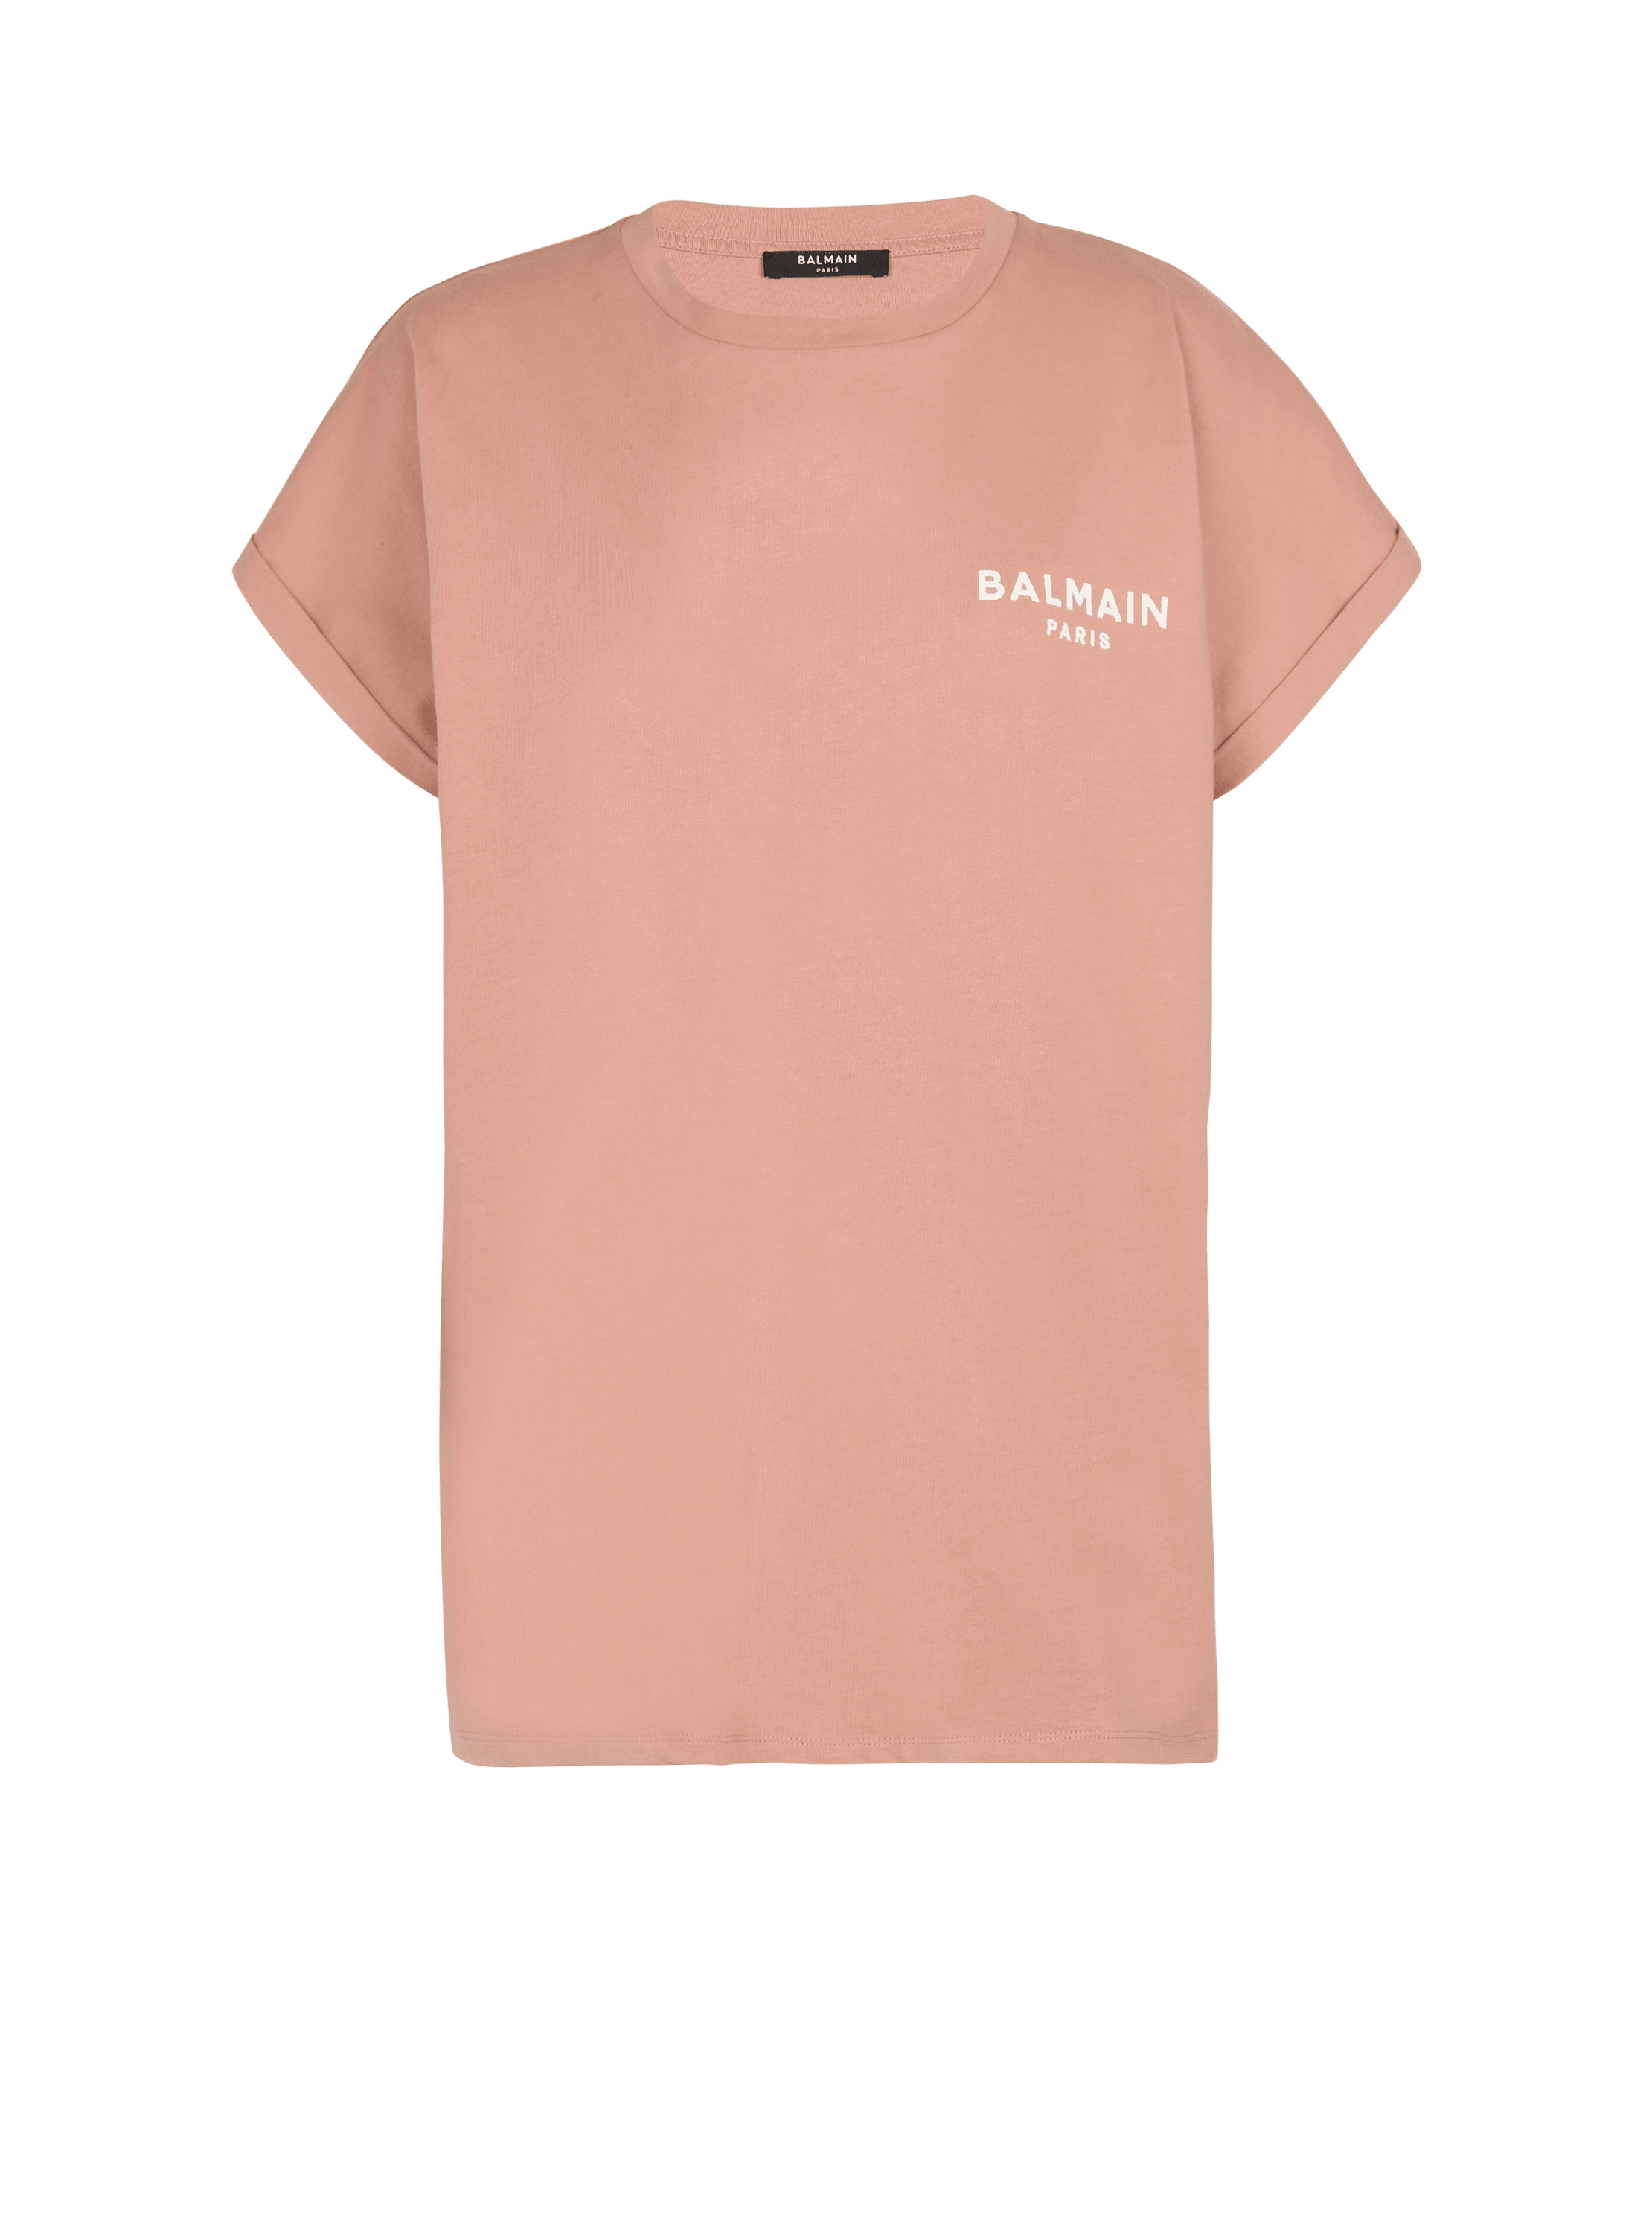 Eco-responsible cotton T-shirt with Balmain logo print, pink, hi-res